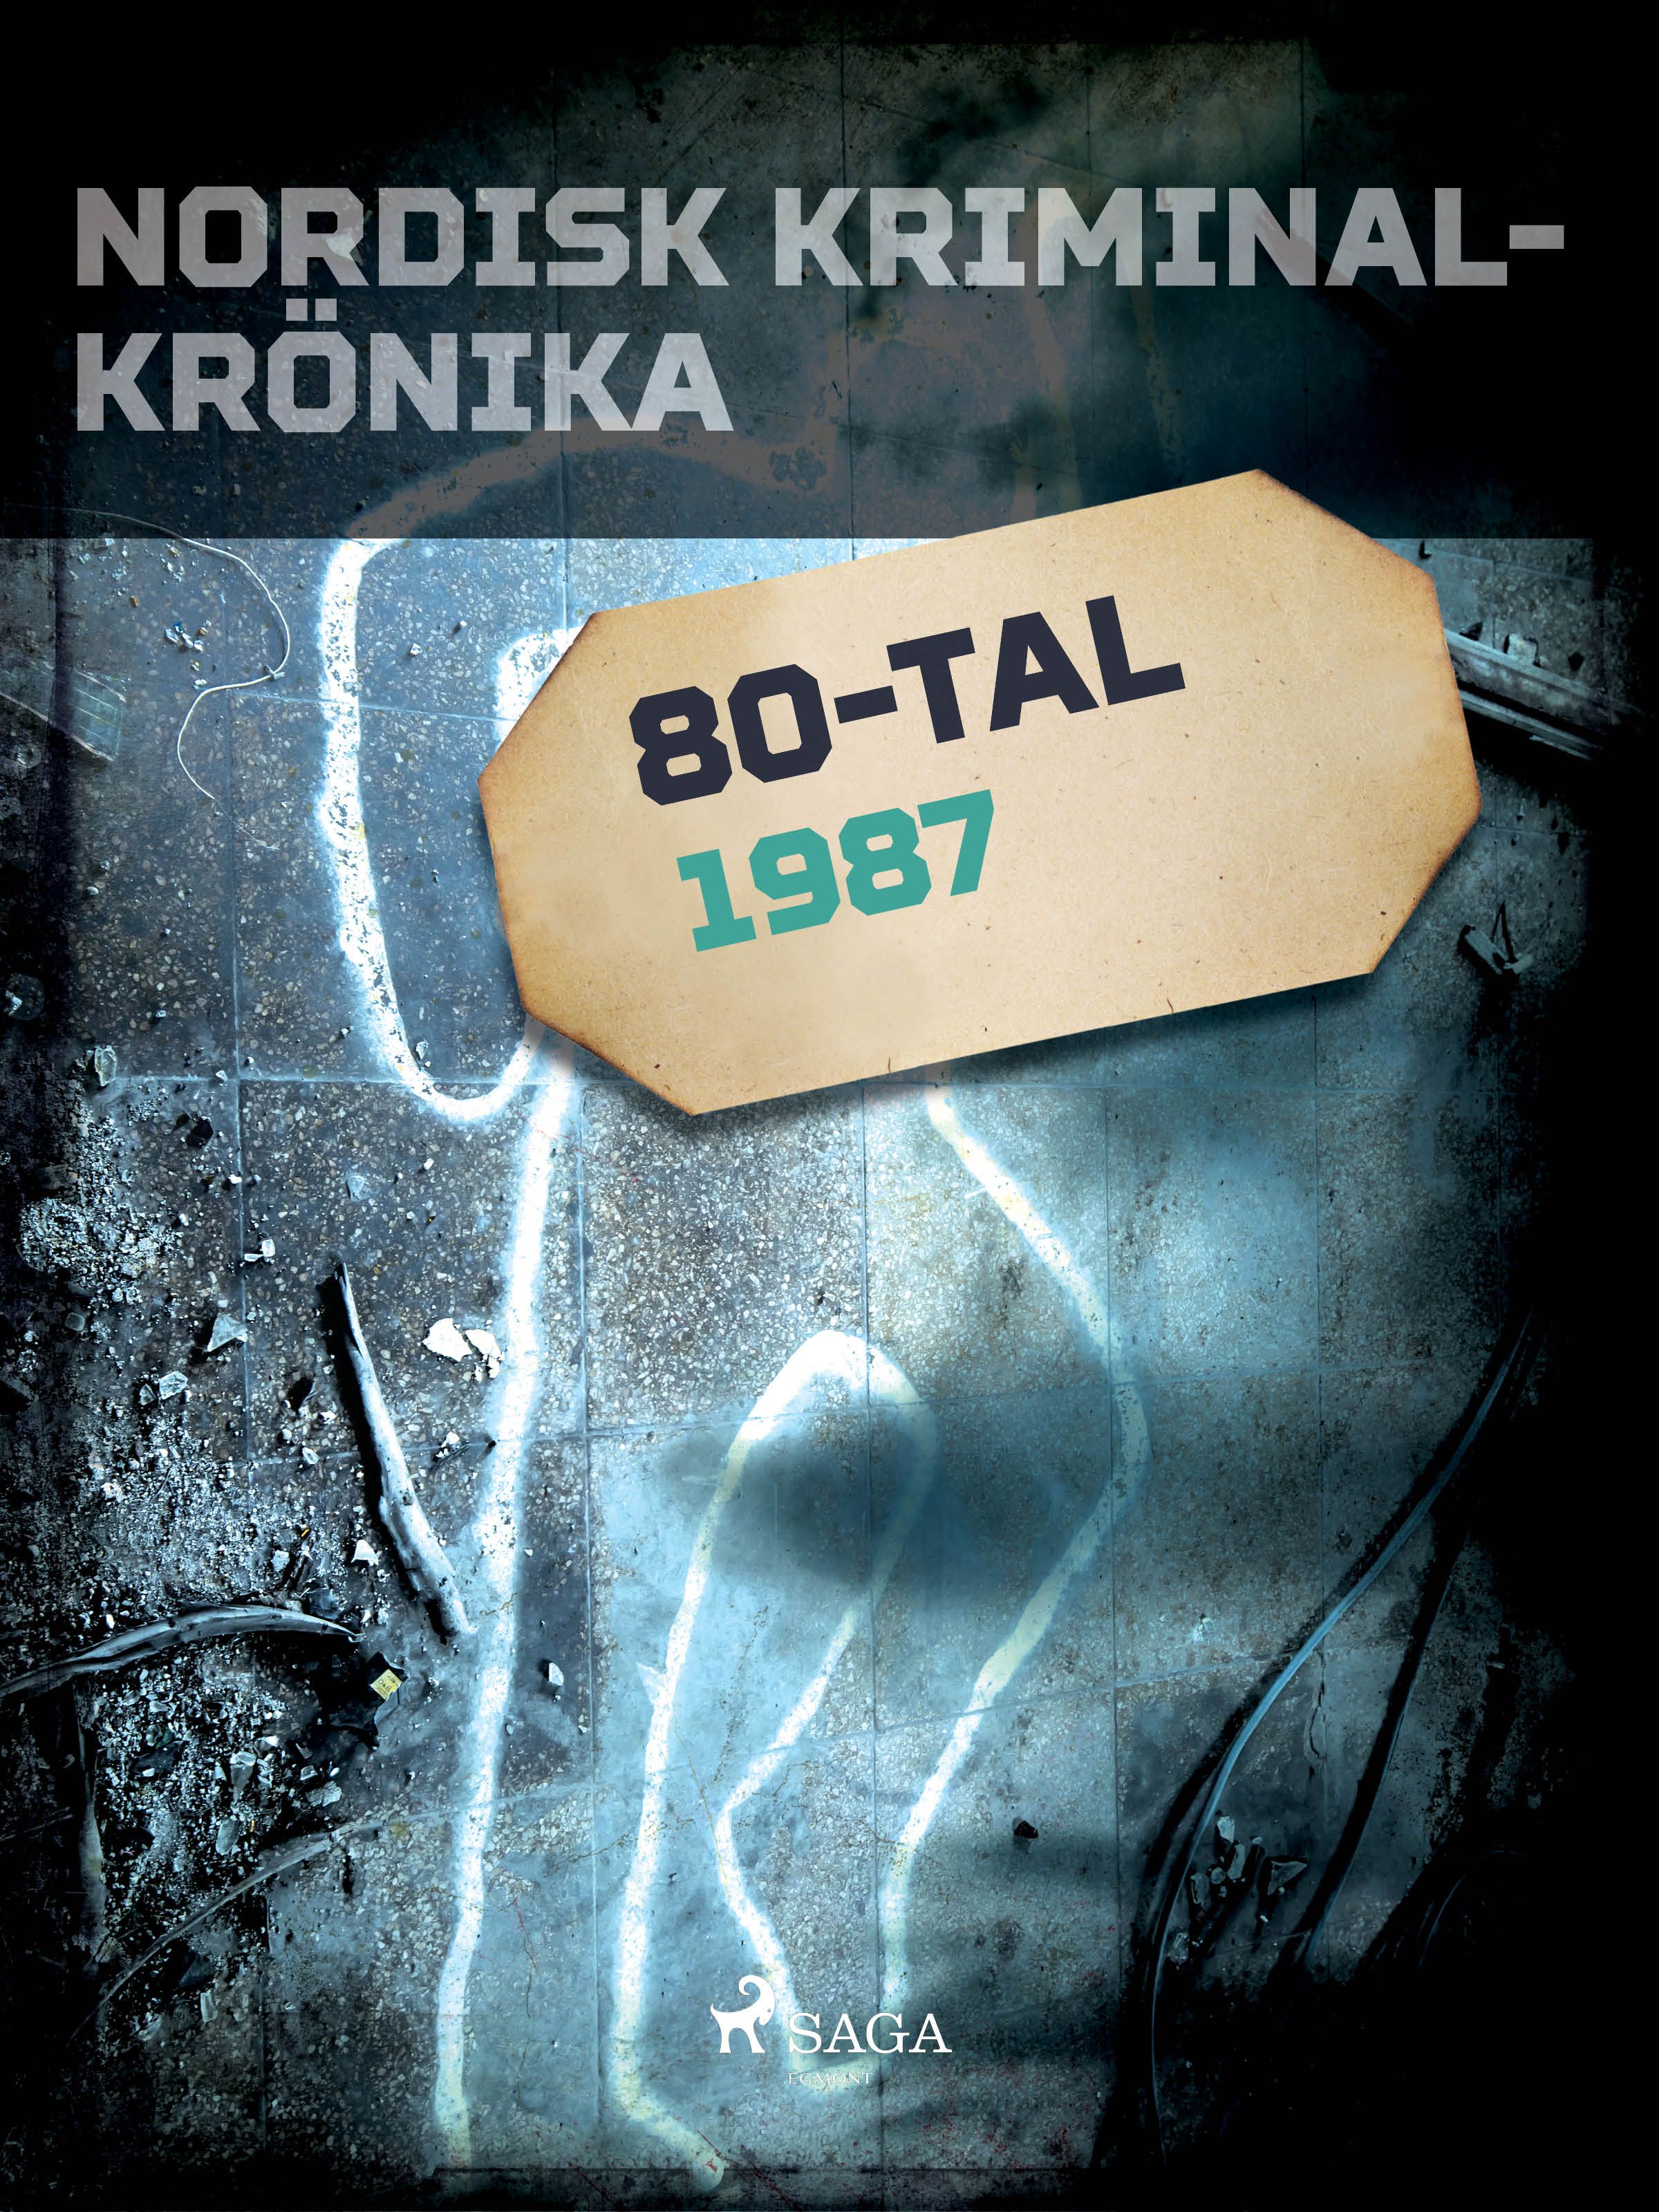 Nordisk kriminalkrönika 1987, eBook by Diverse